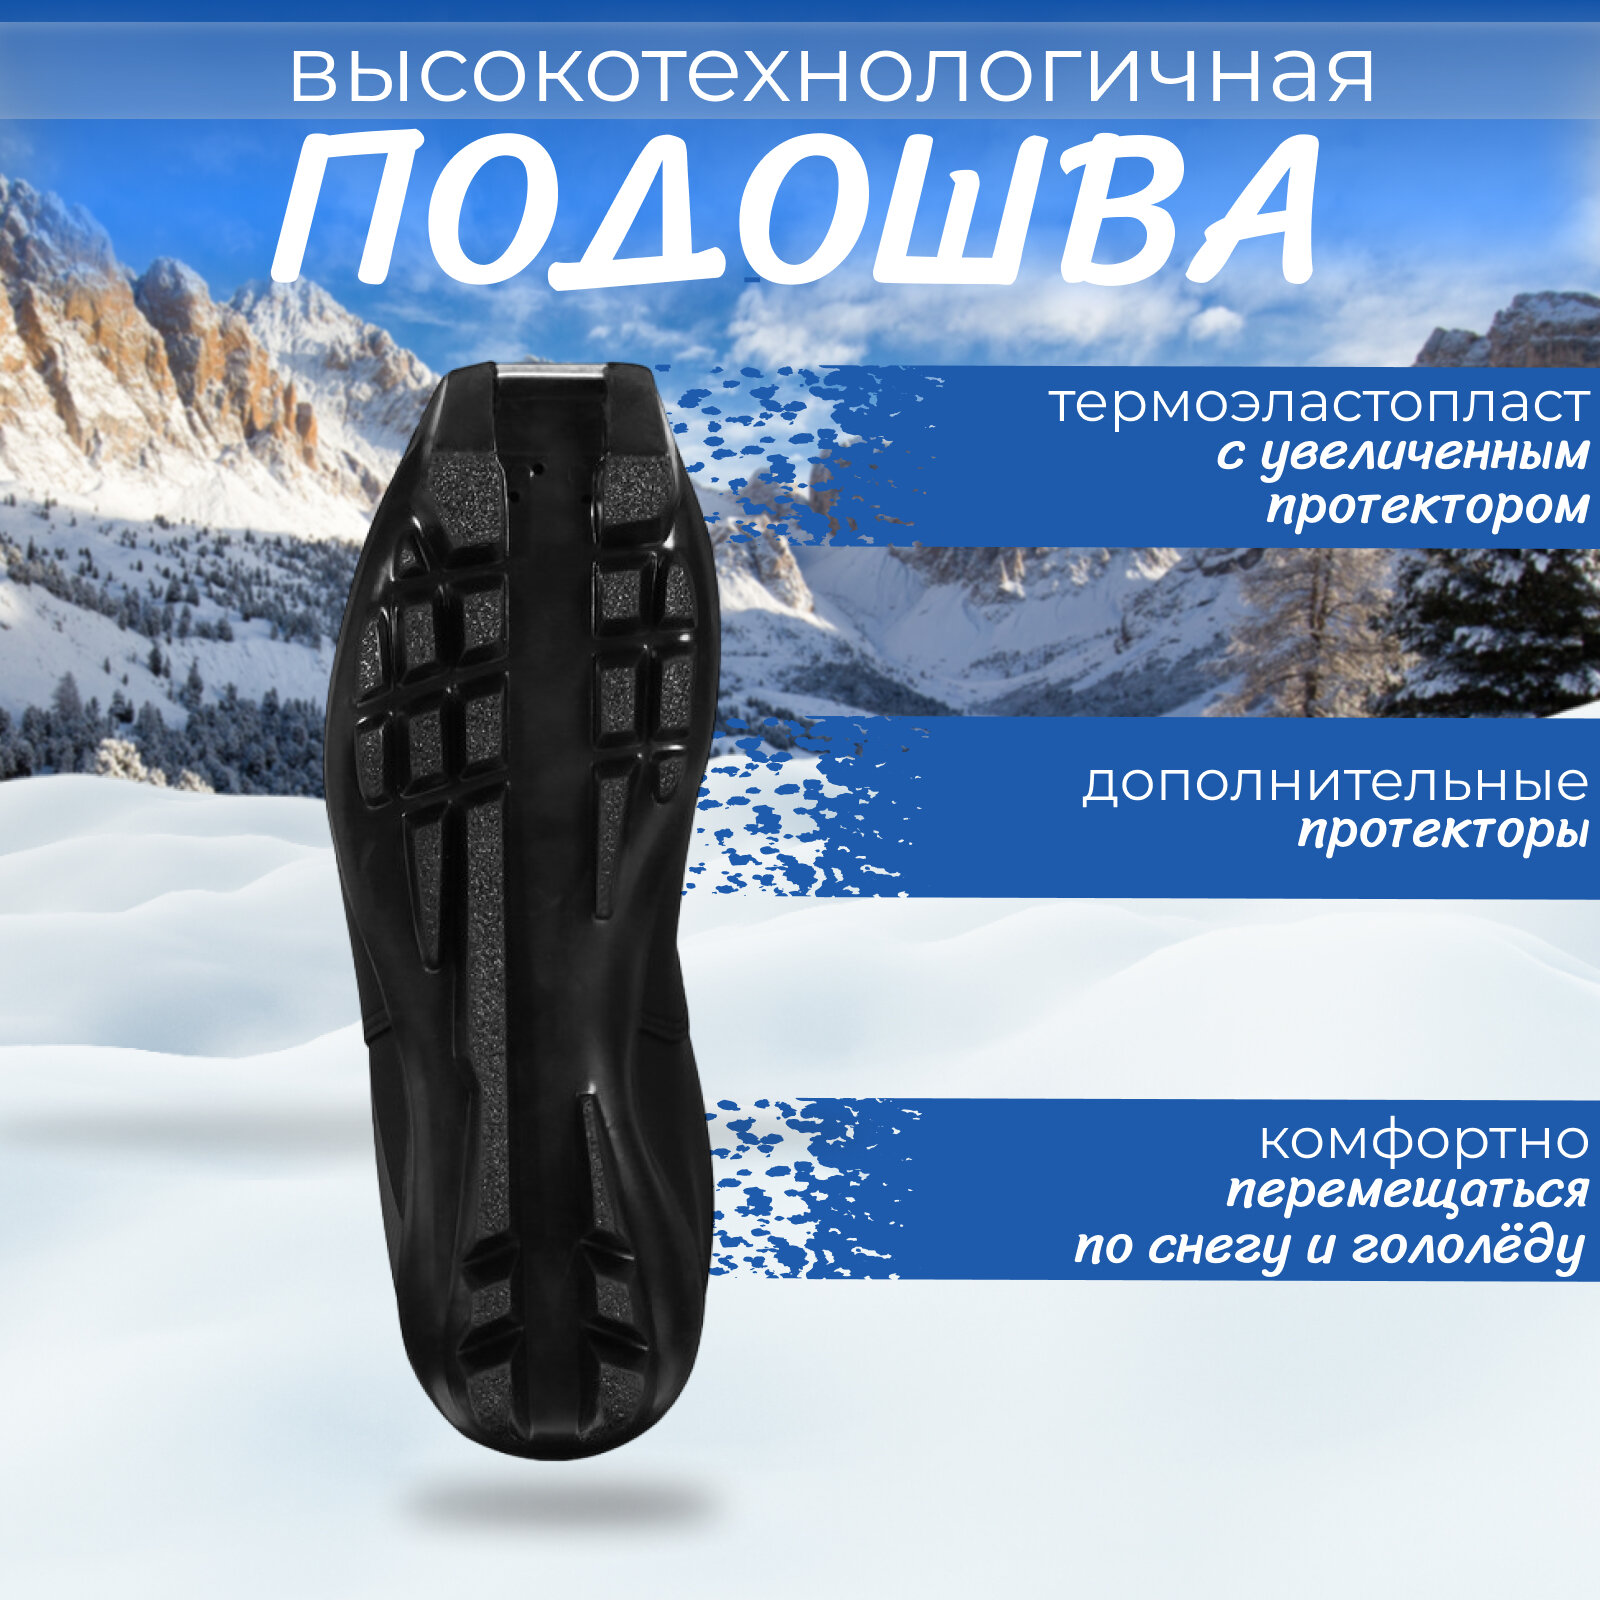 Ботинки лыжные Winter Star classic, SNS, размер 42, цвет чёрный, серый